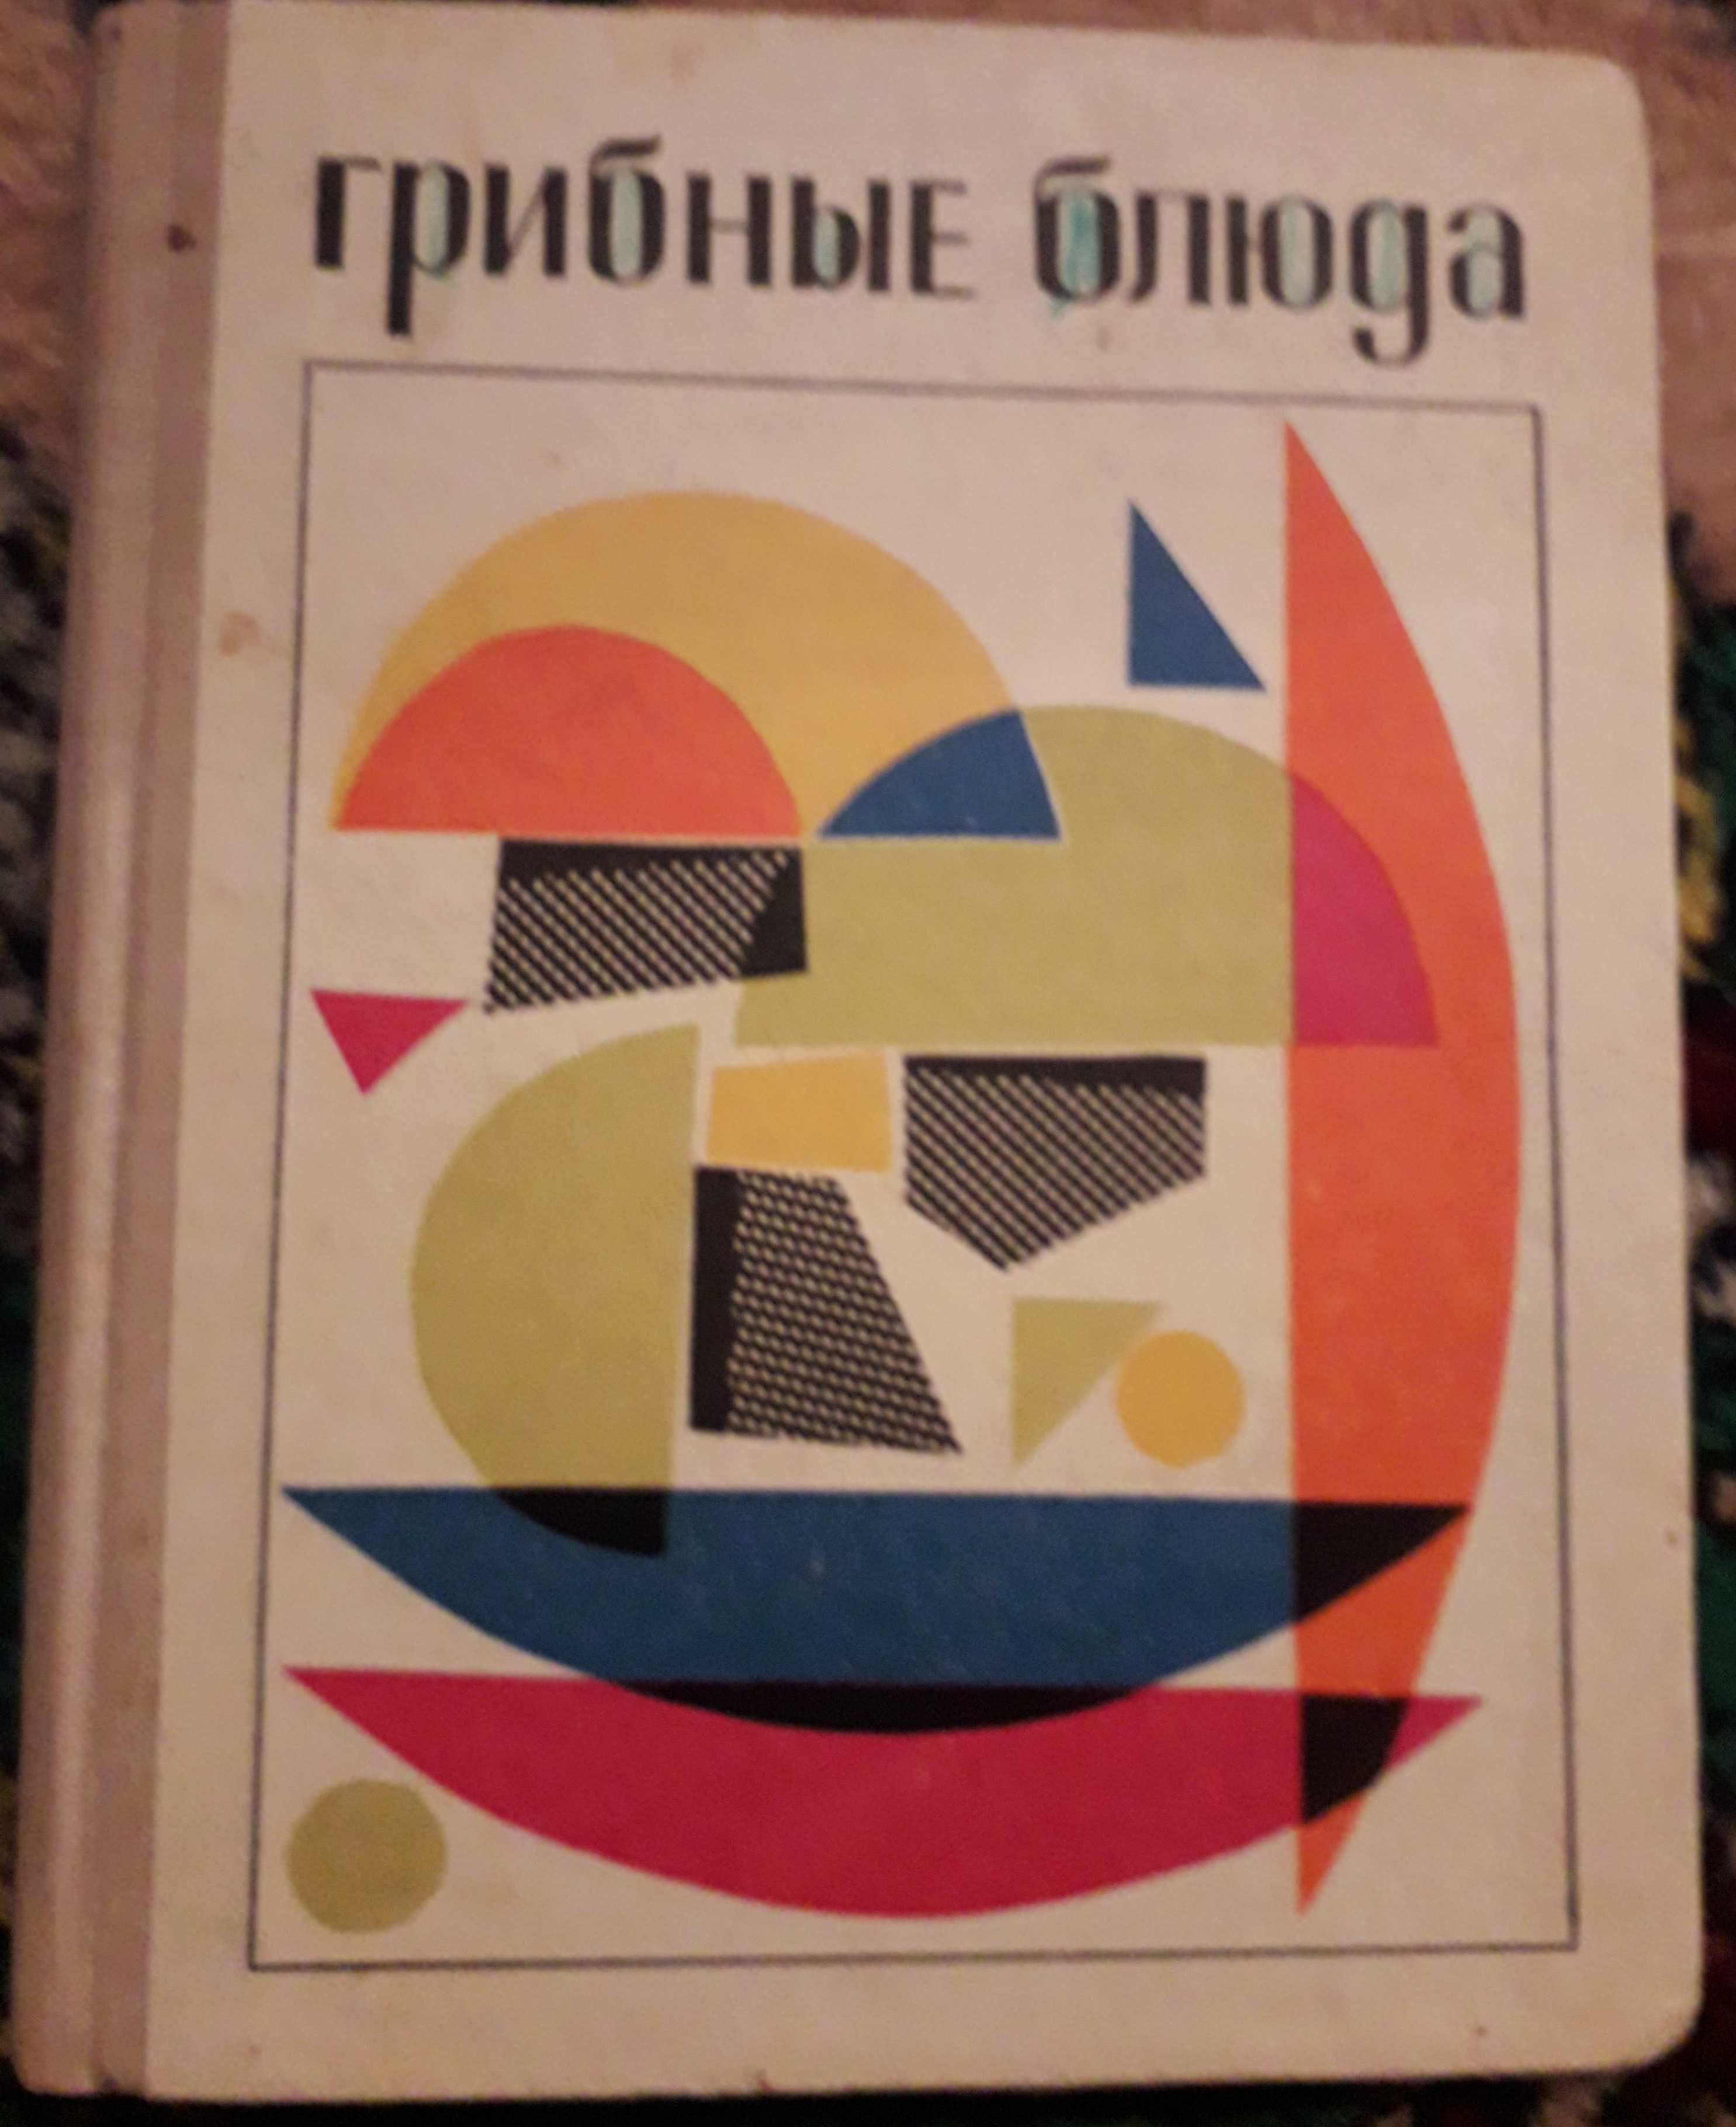 Грибные блюда, авт. И.Н.Максимов, издательство Каменяр Львов 1971 год